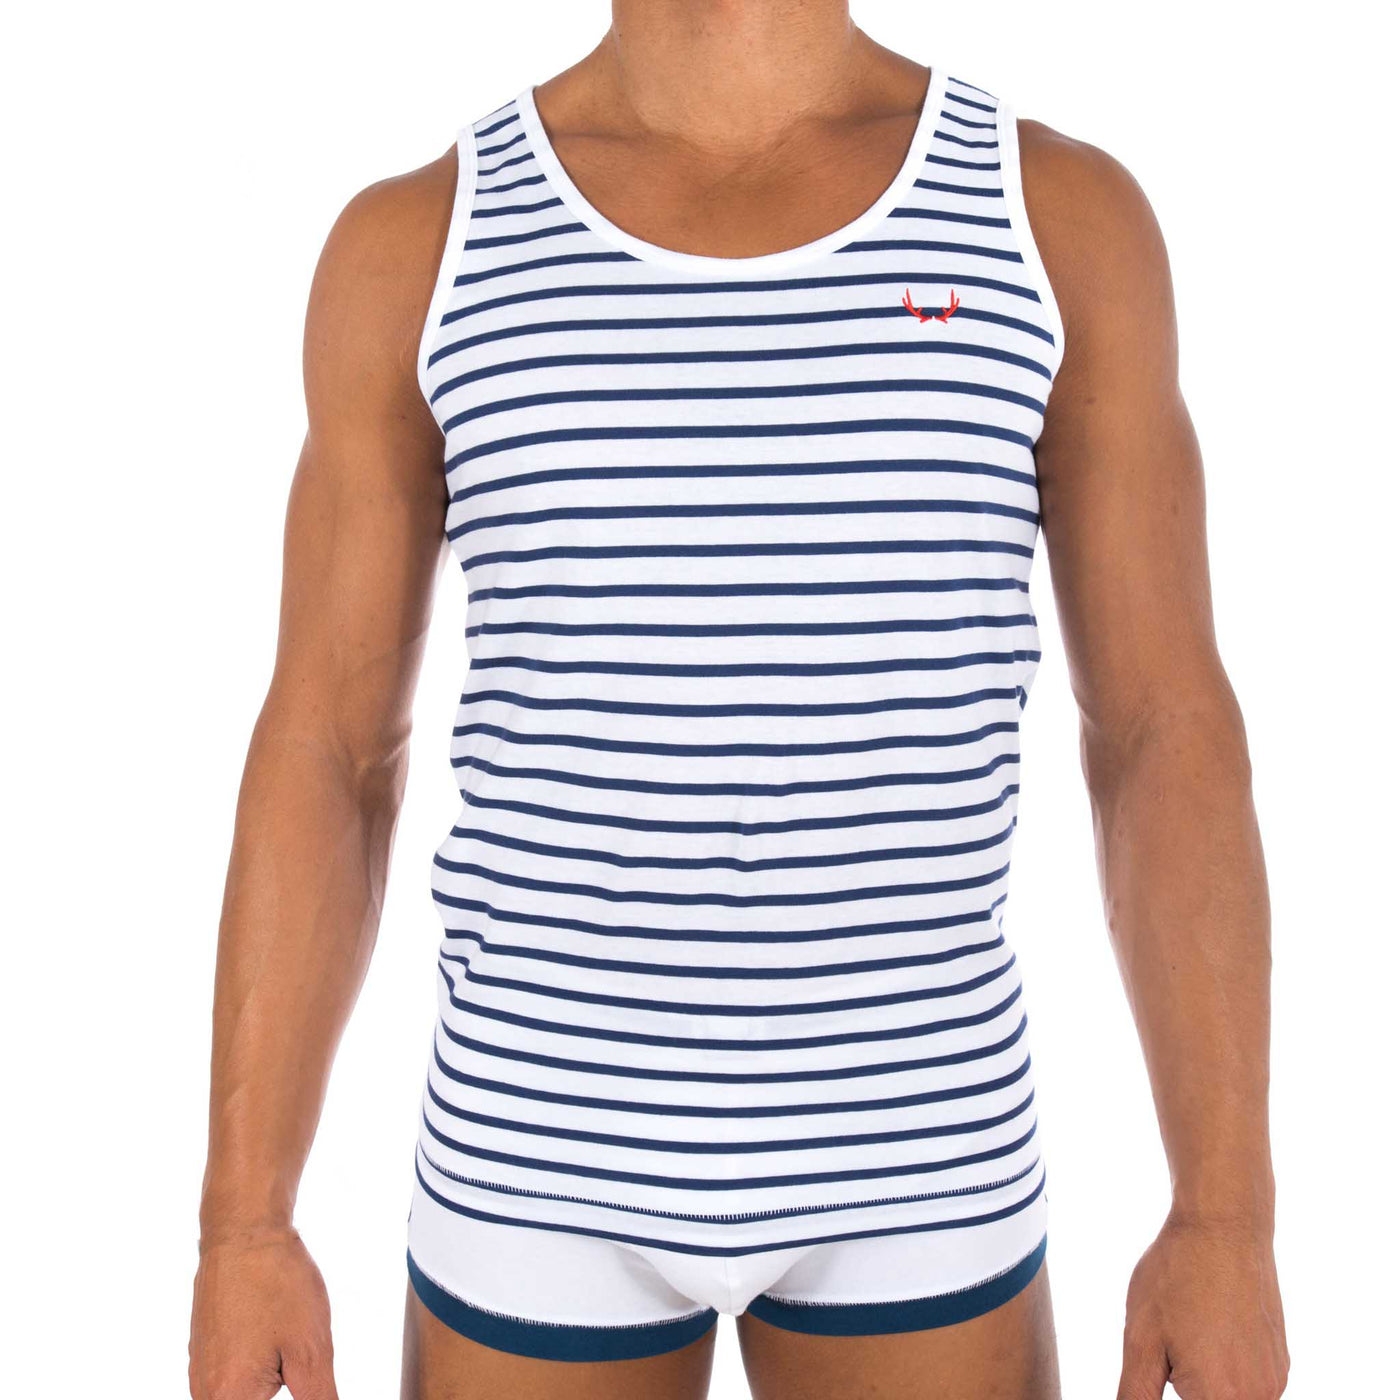 White vest - navy stripes